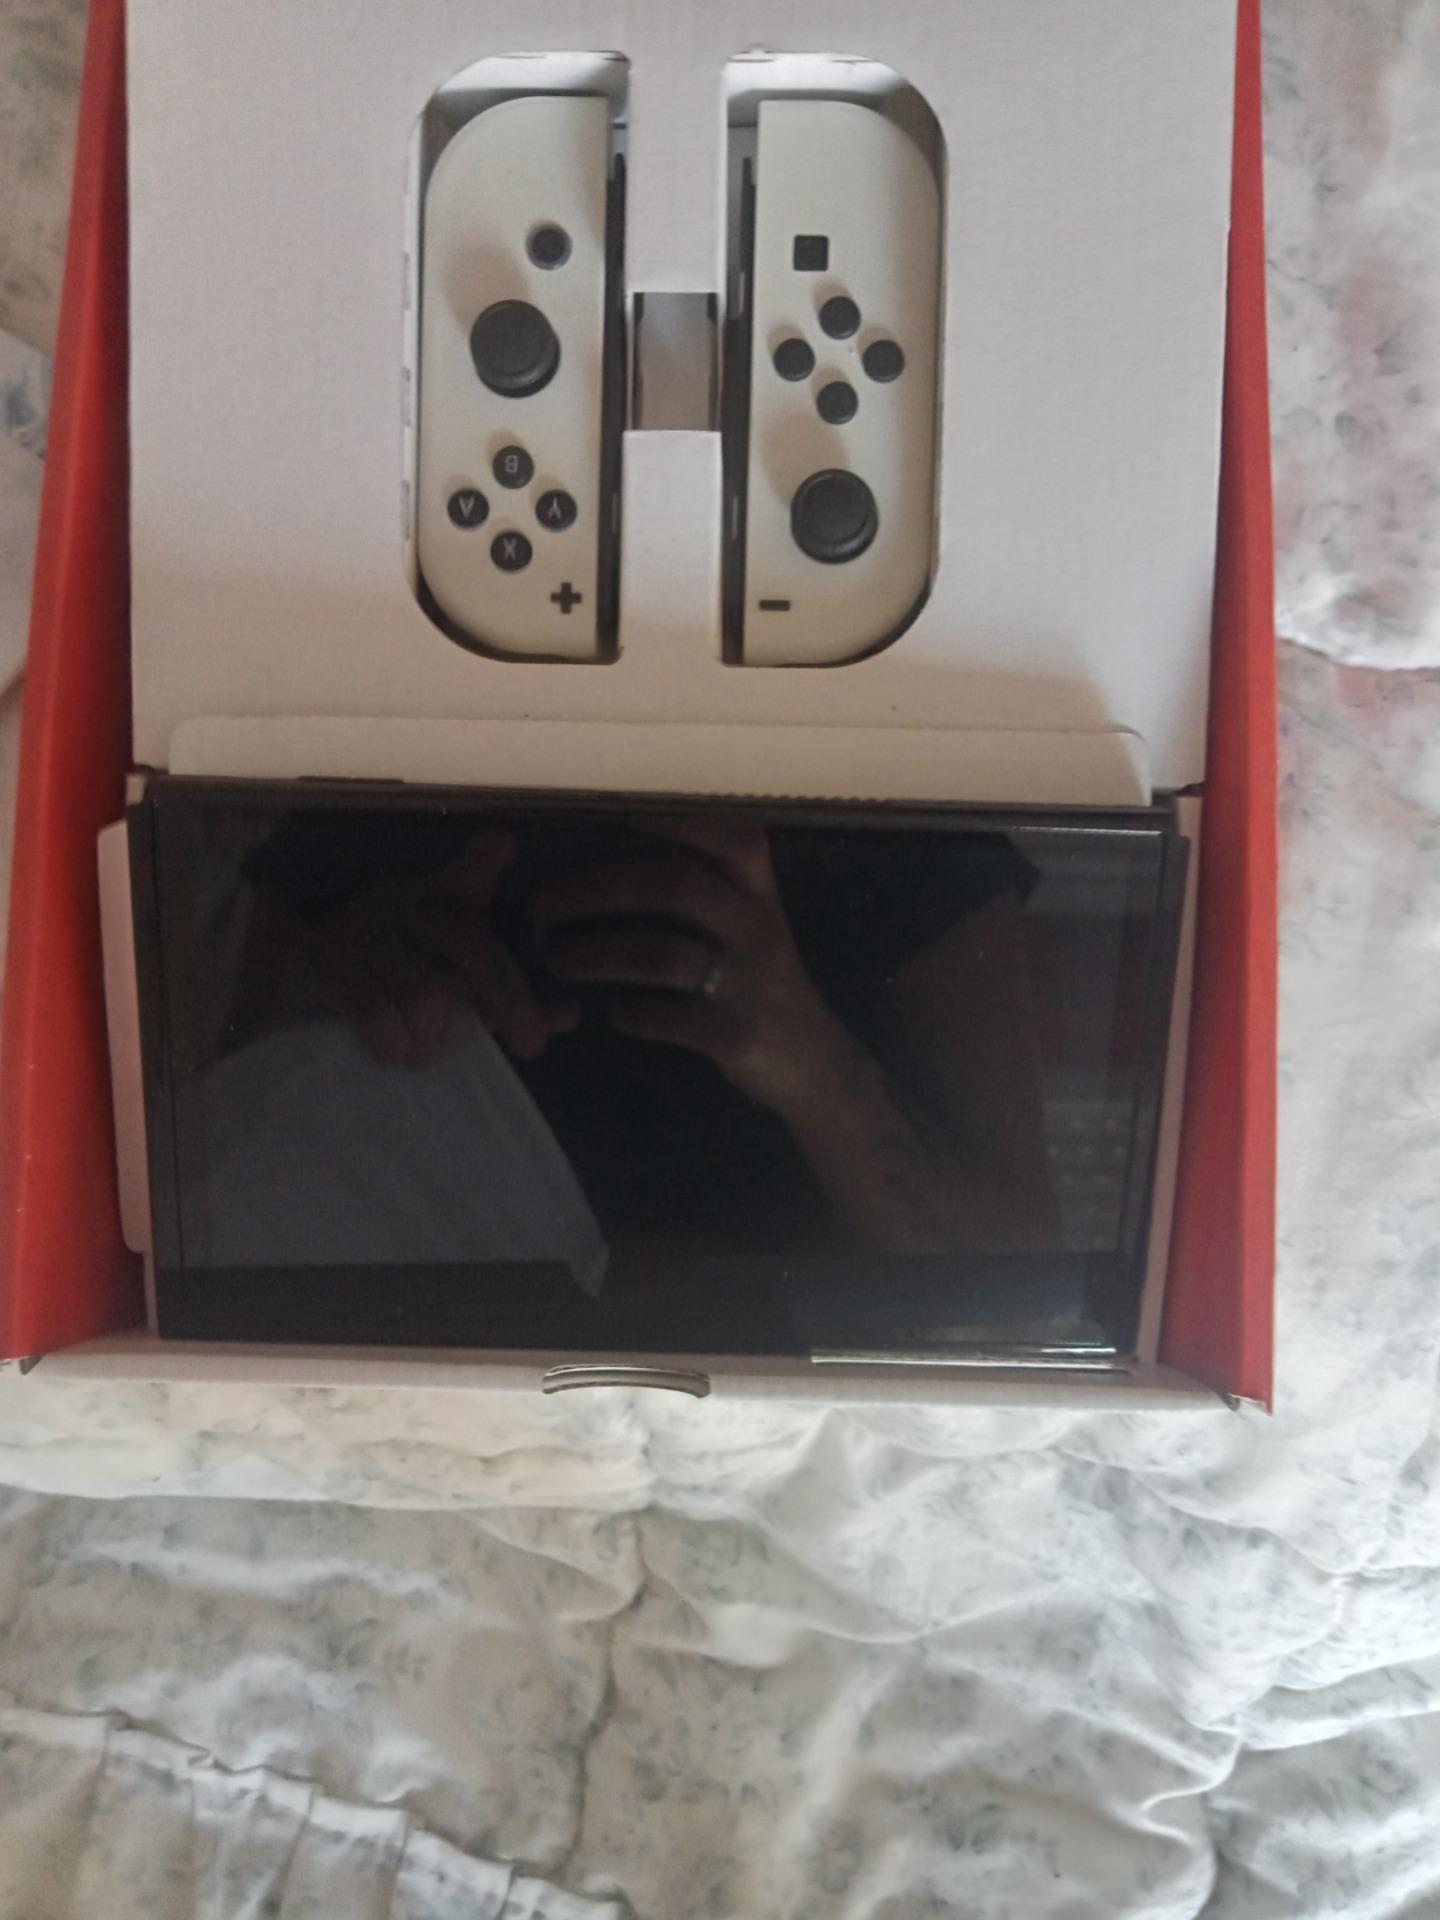 Foto 1 de Nintendo switch cambio por un teléfono móvil 